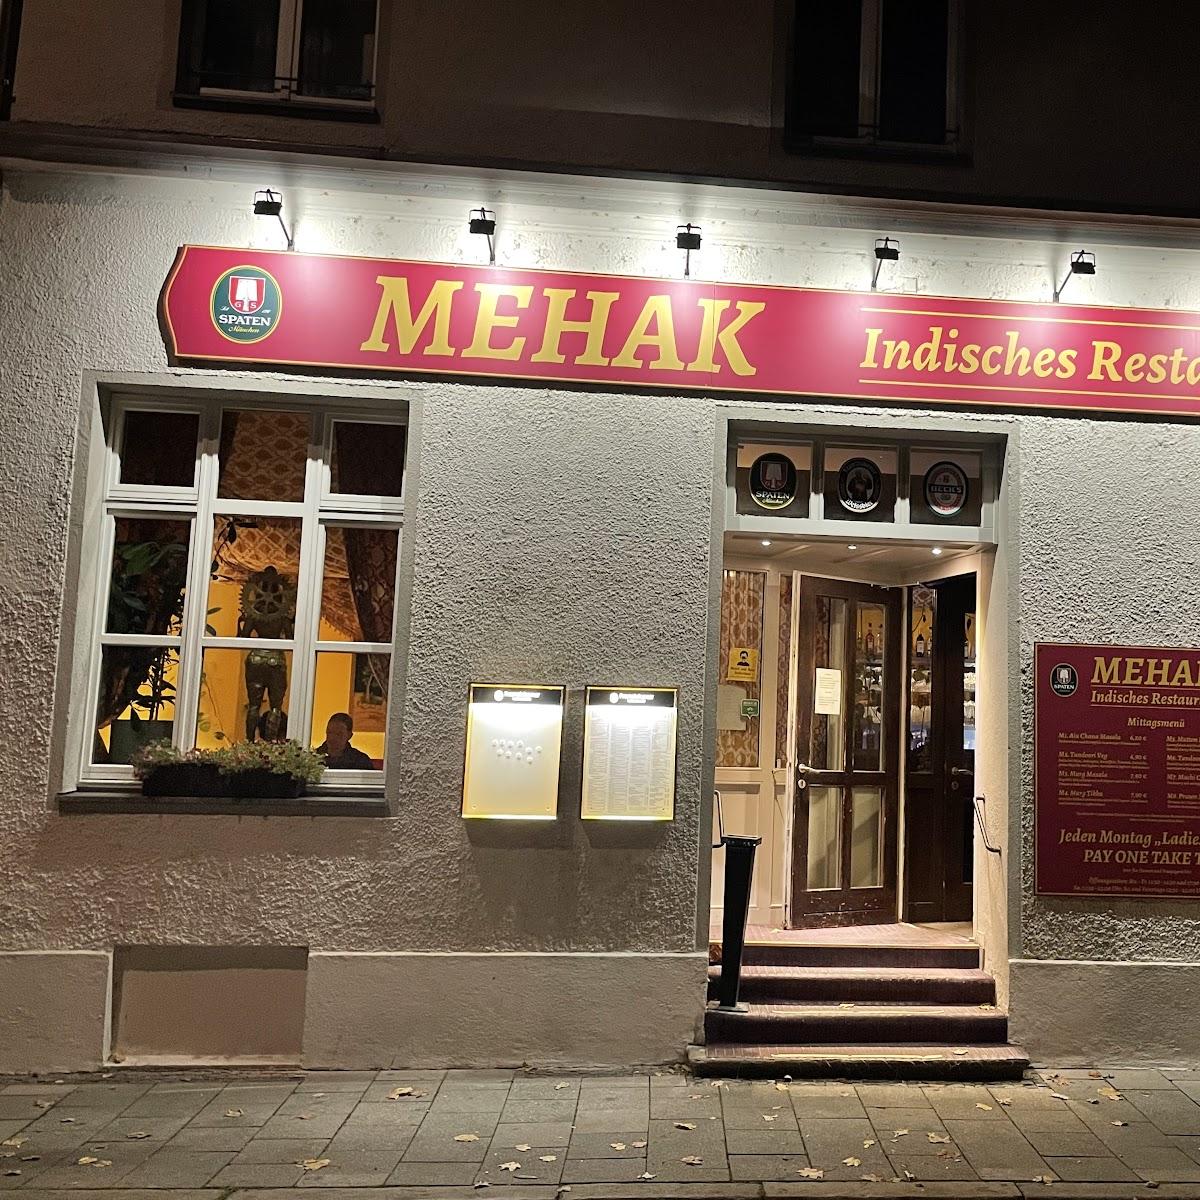 Restaurant "Mehak Indisches Restaurant" in München